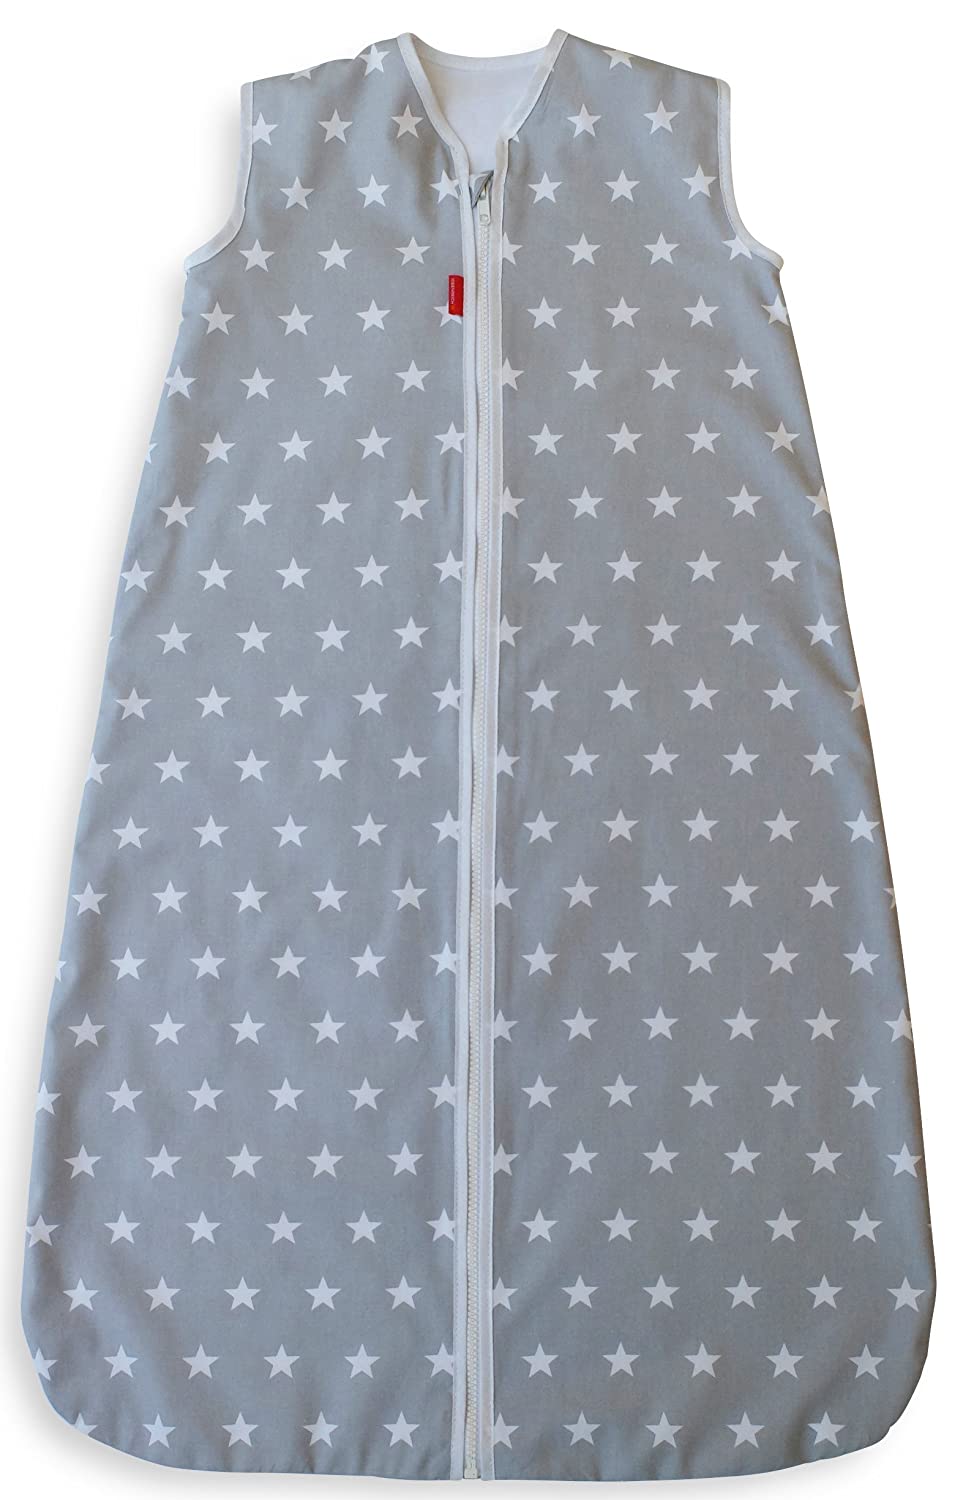 Ideenreich 2237 Sleeping Bag Stars 70 cm Grey